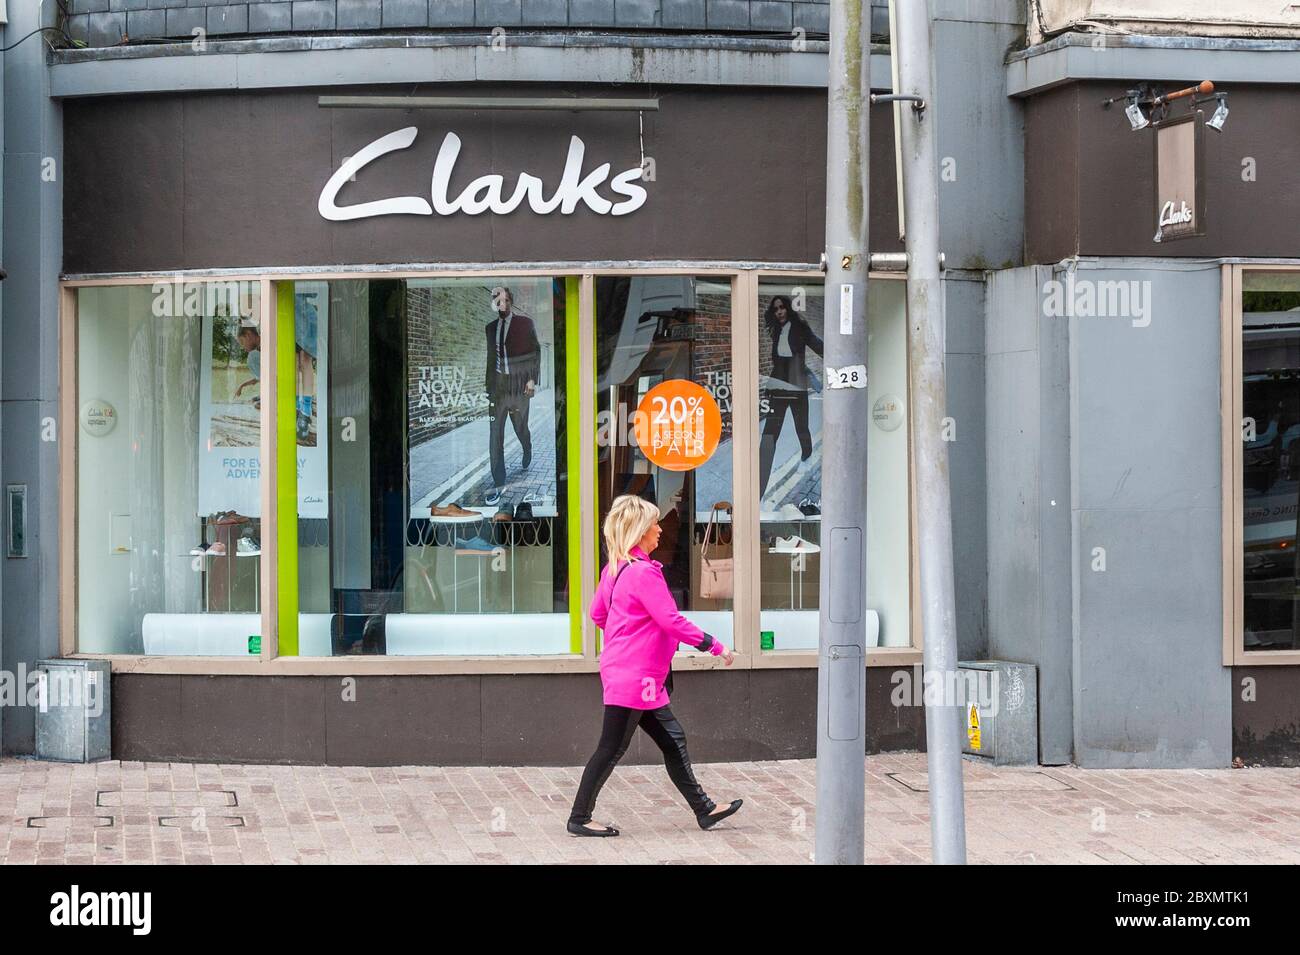 Cork, Irlanda. 8 de junio de 2020. Muchas tiendas en Irlanda están reabriendo hoy después de un cierre de 3 meses debido a la pandemia de Covid-19. Una mujer pasa por Clarks Store en Patrick Street. Crédito: Noticias de AG/Noticias en vivo de Alamy Foto de stock